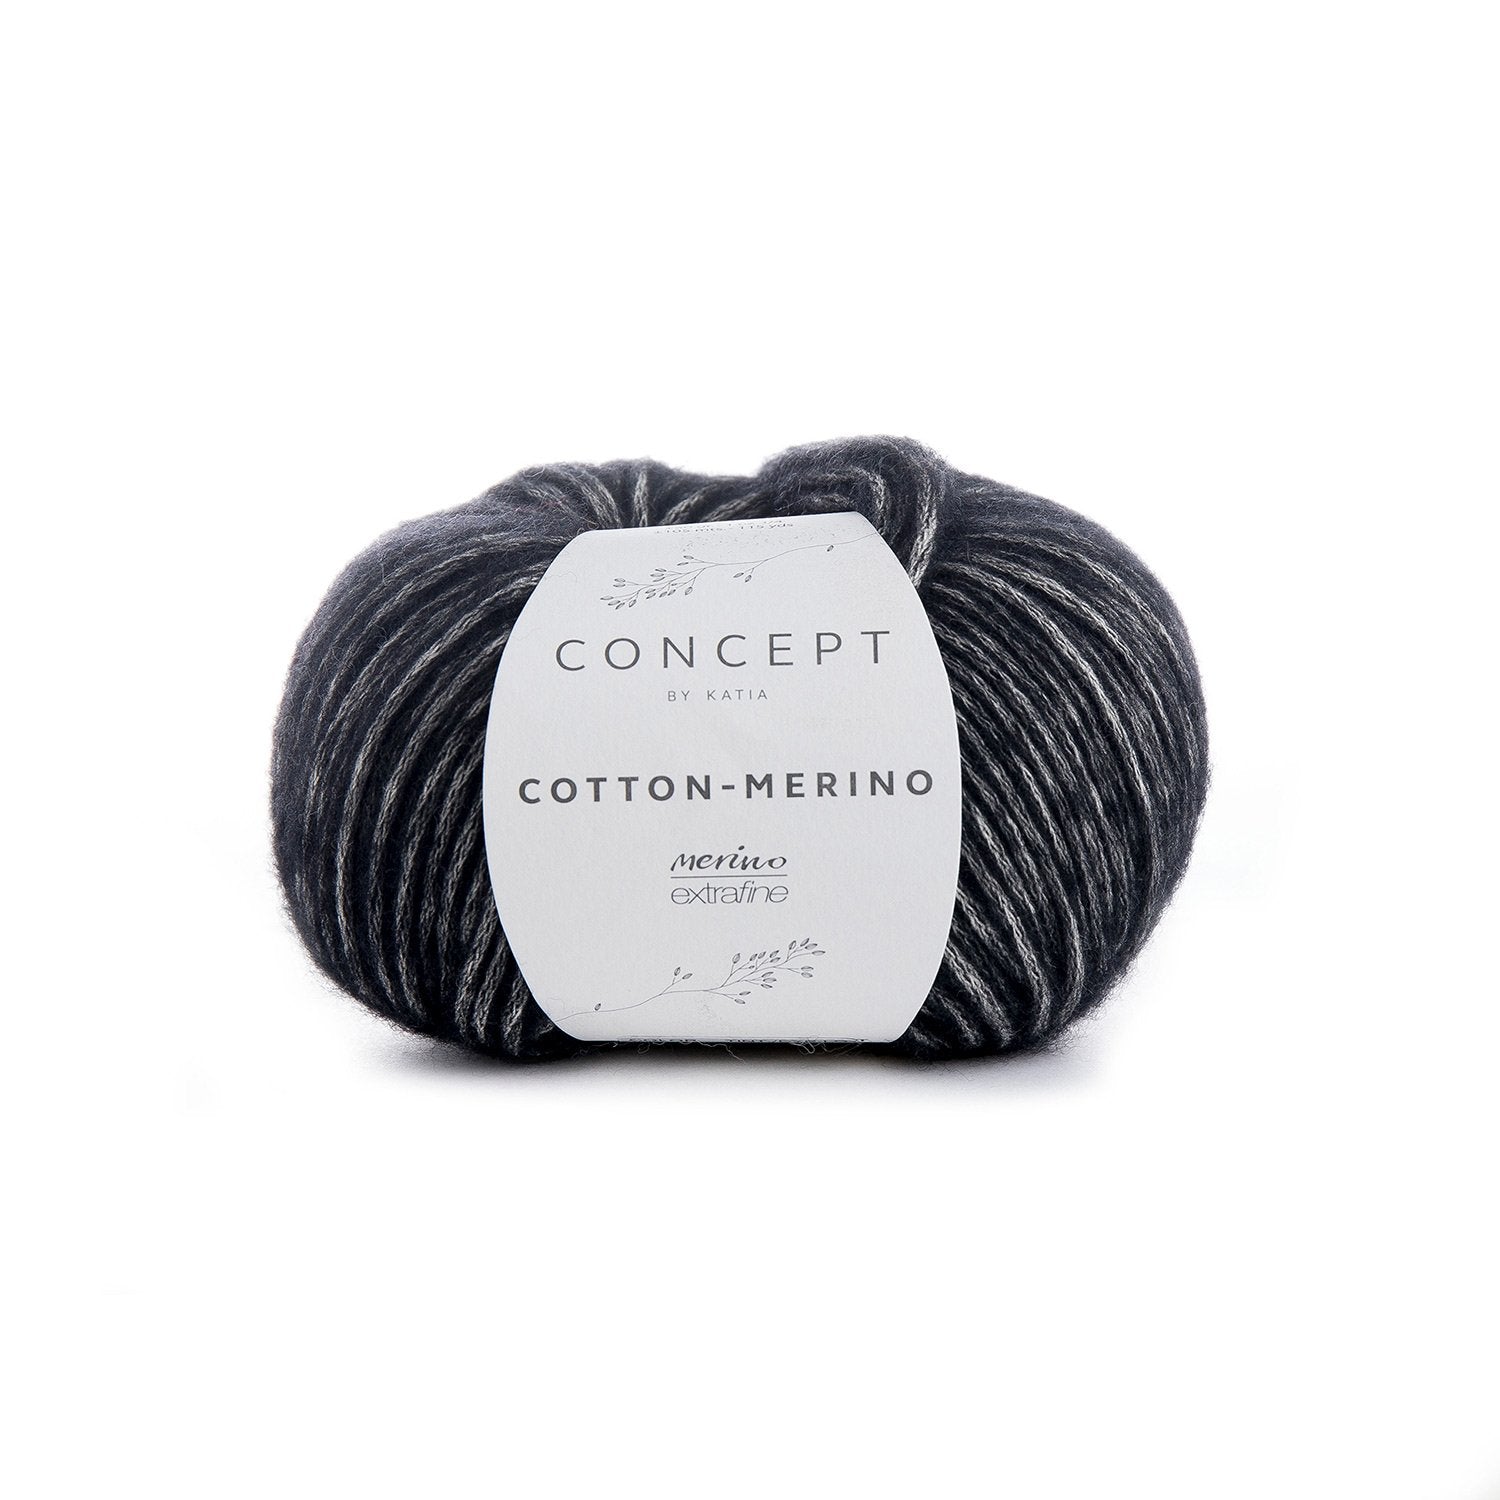 London Beanie Crochet Kit - Justine Walley - 108 Black - The Little Yarn Store